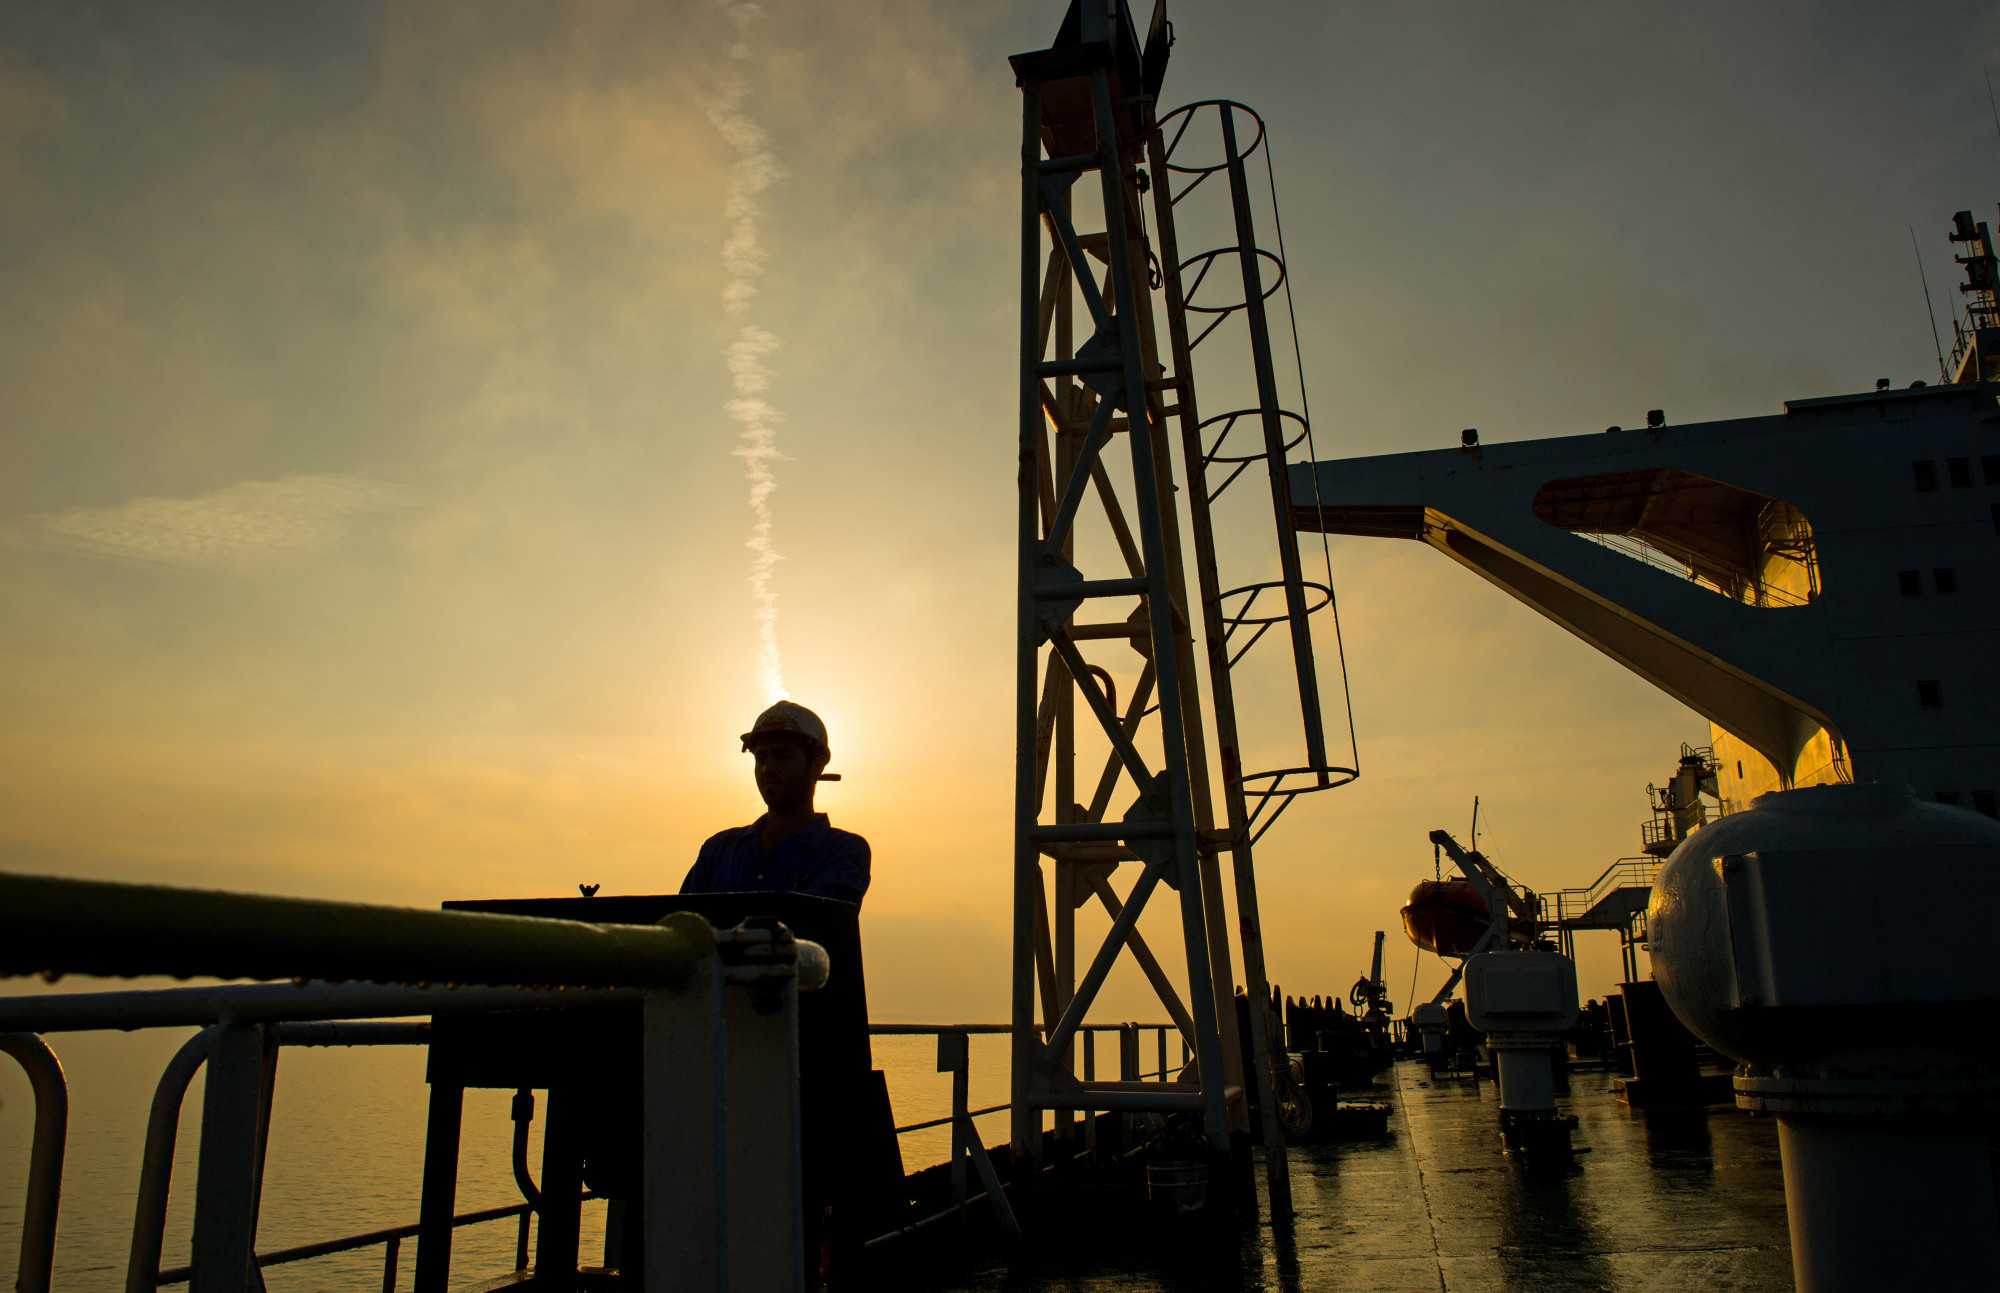 Nafta pada nakon sedmičnog gubitka, trgovci fokusirani na Bliski istok